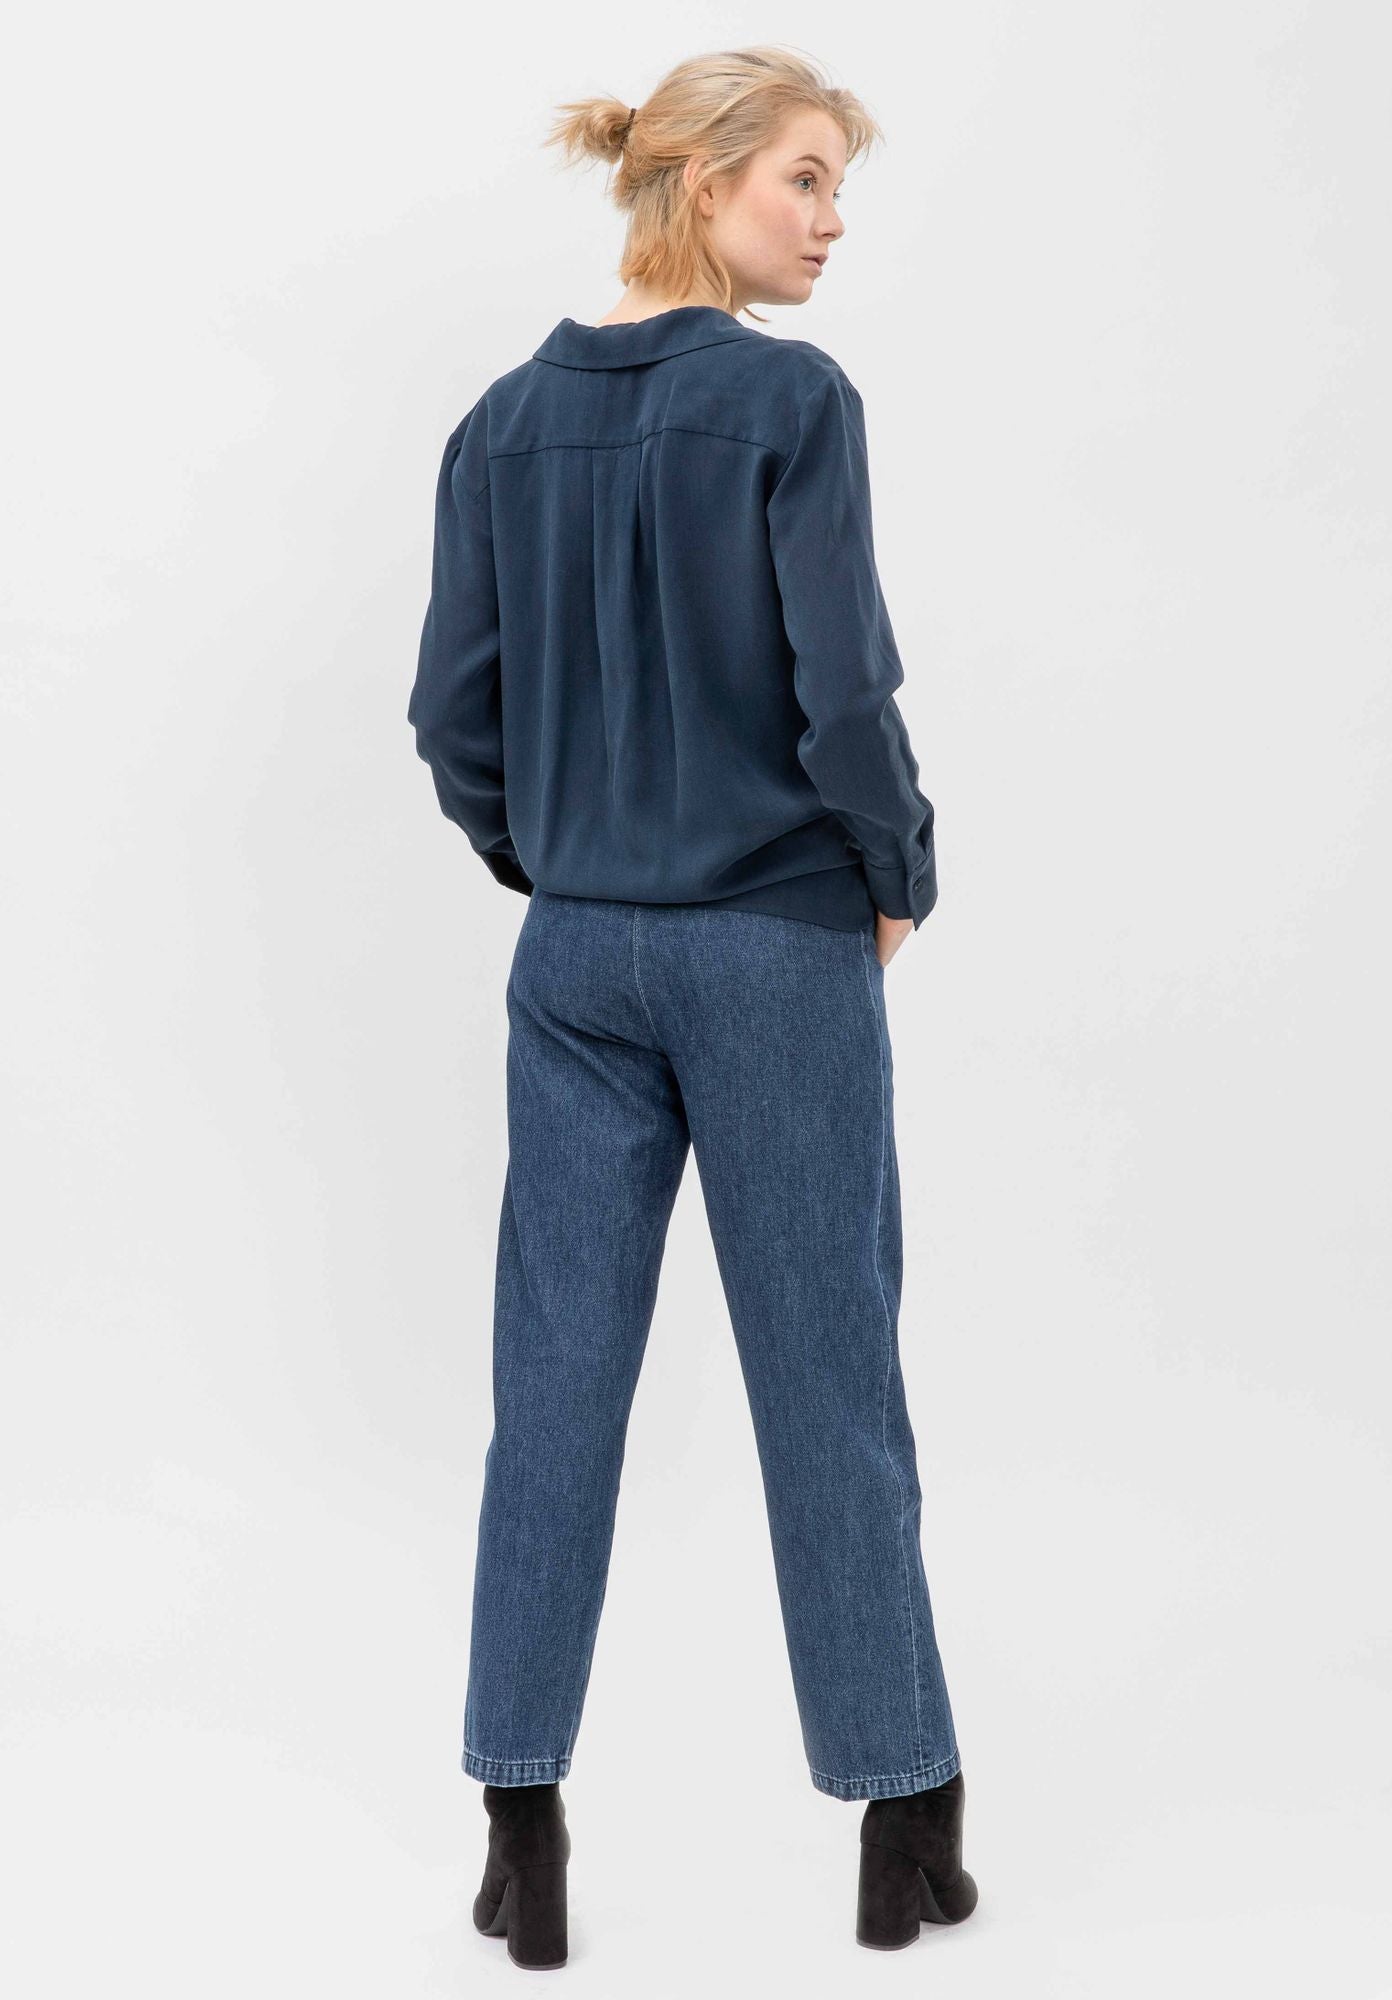 Jeans GREVIE in dunkelblau von LOVJOI aus Bio-Baumwolle